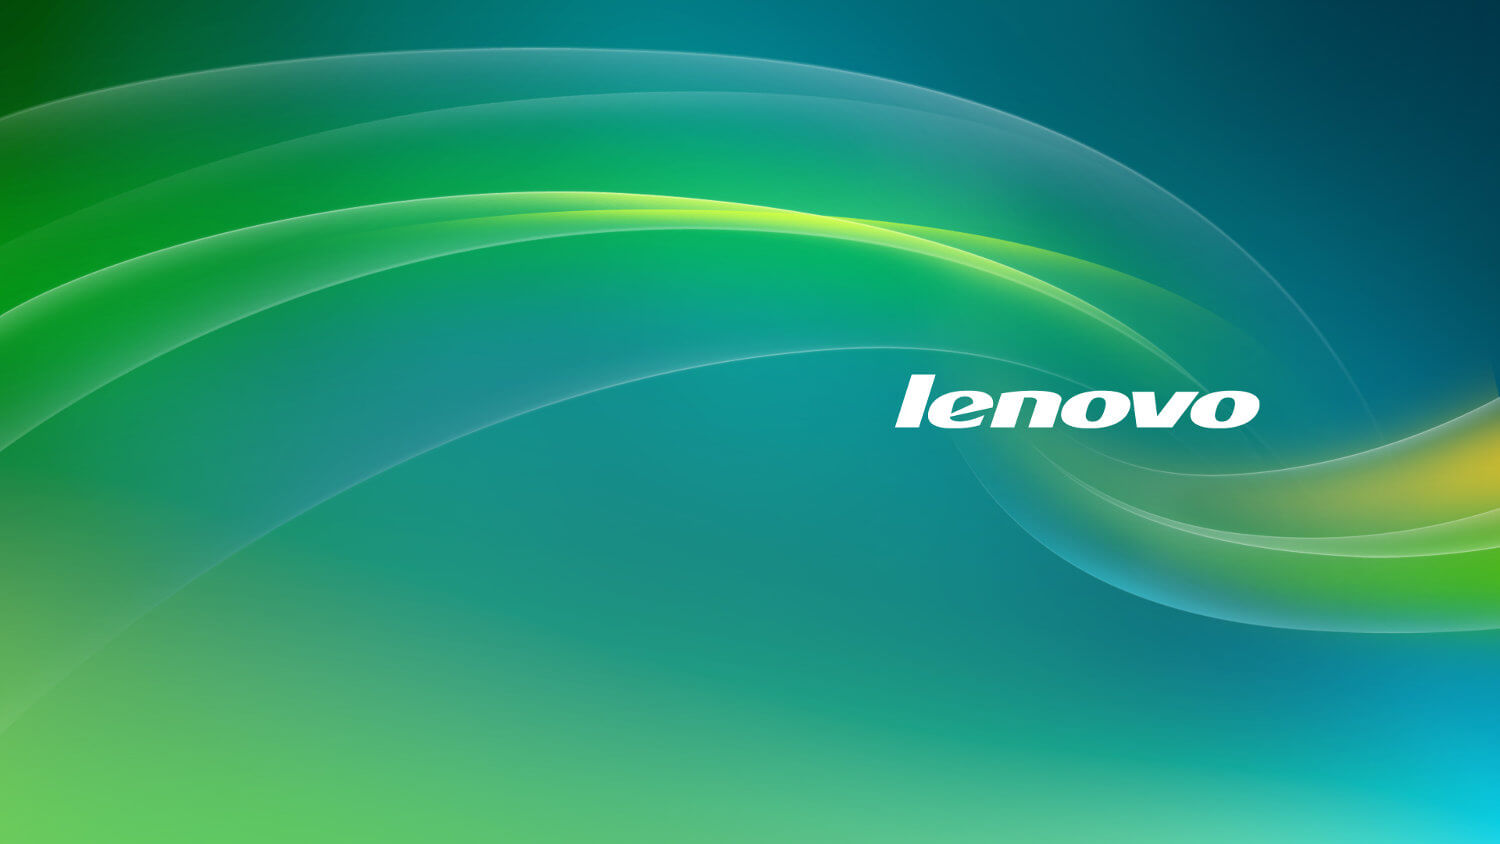 Чем примечателен селфи-смартфон Lenovo Vibe S1? Фото.